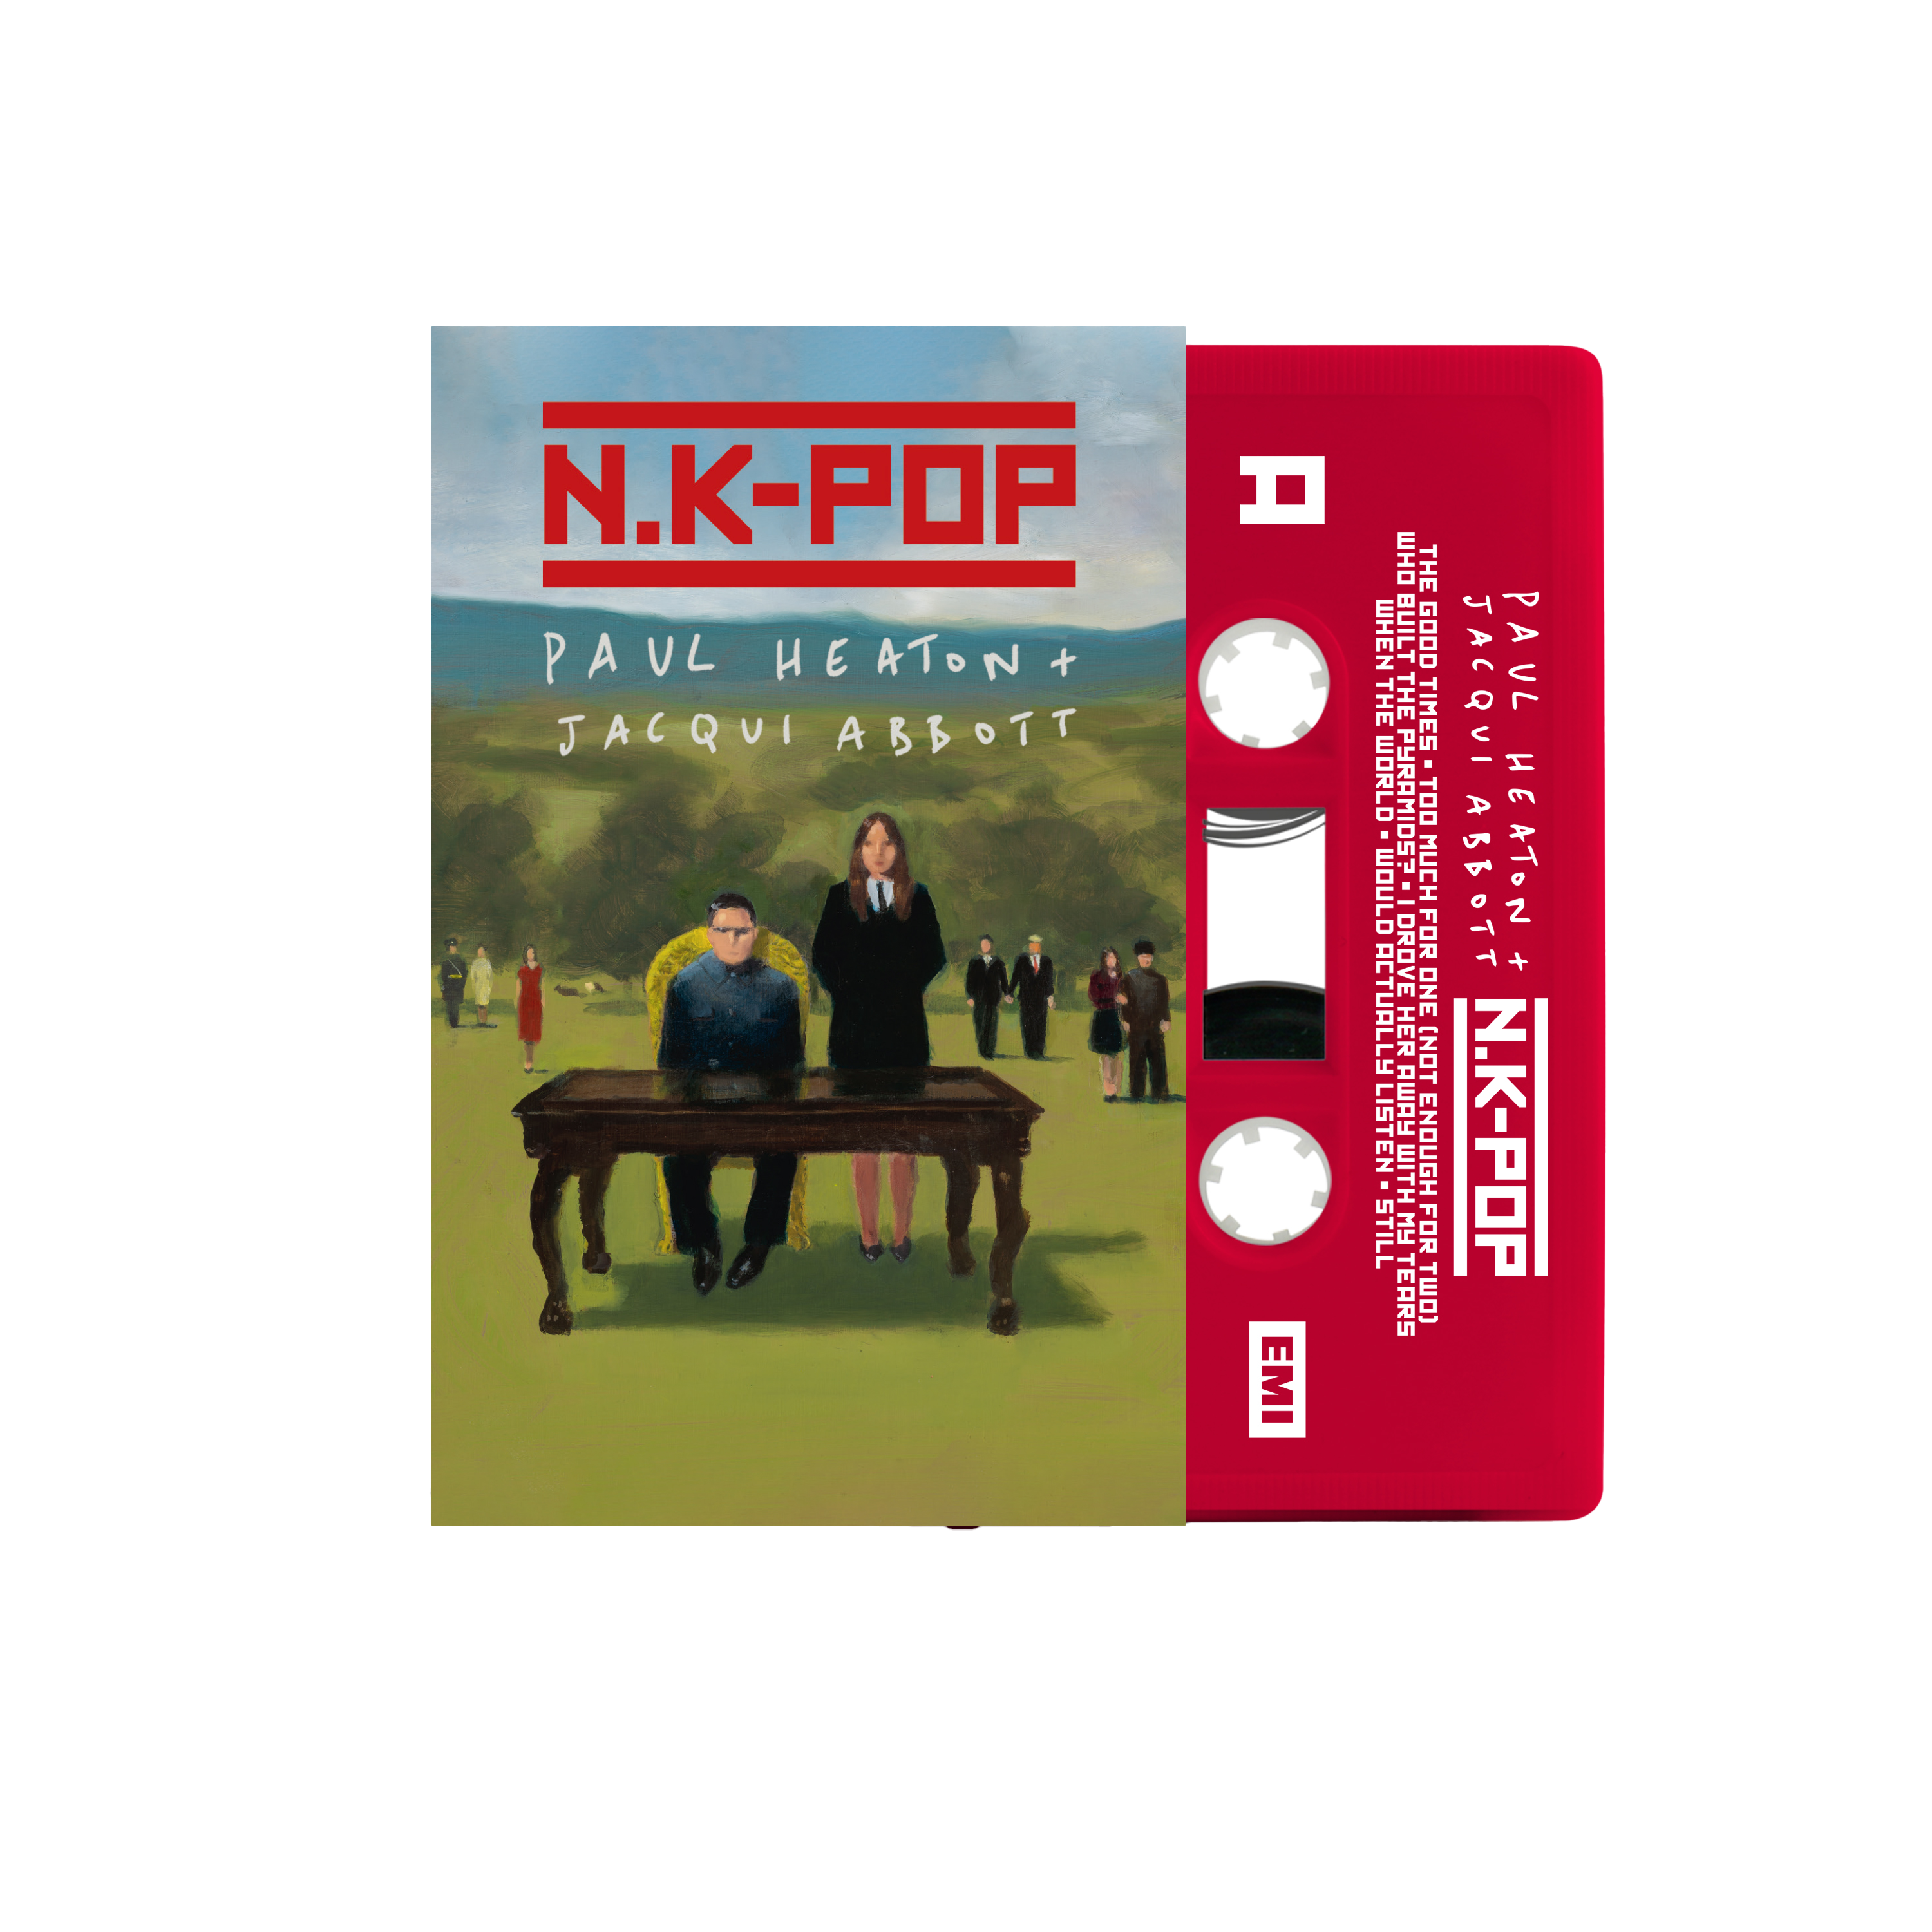 Paul Heaton - N.K-Pop Cassette Tape